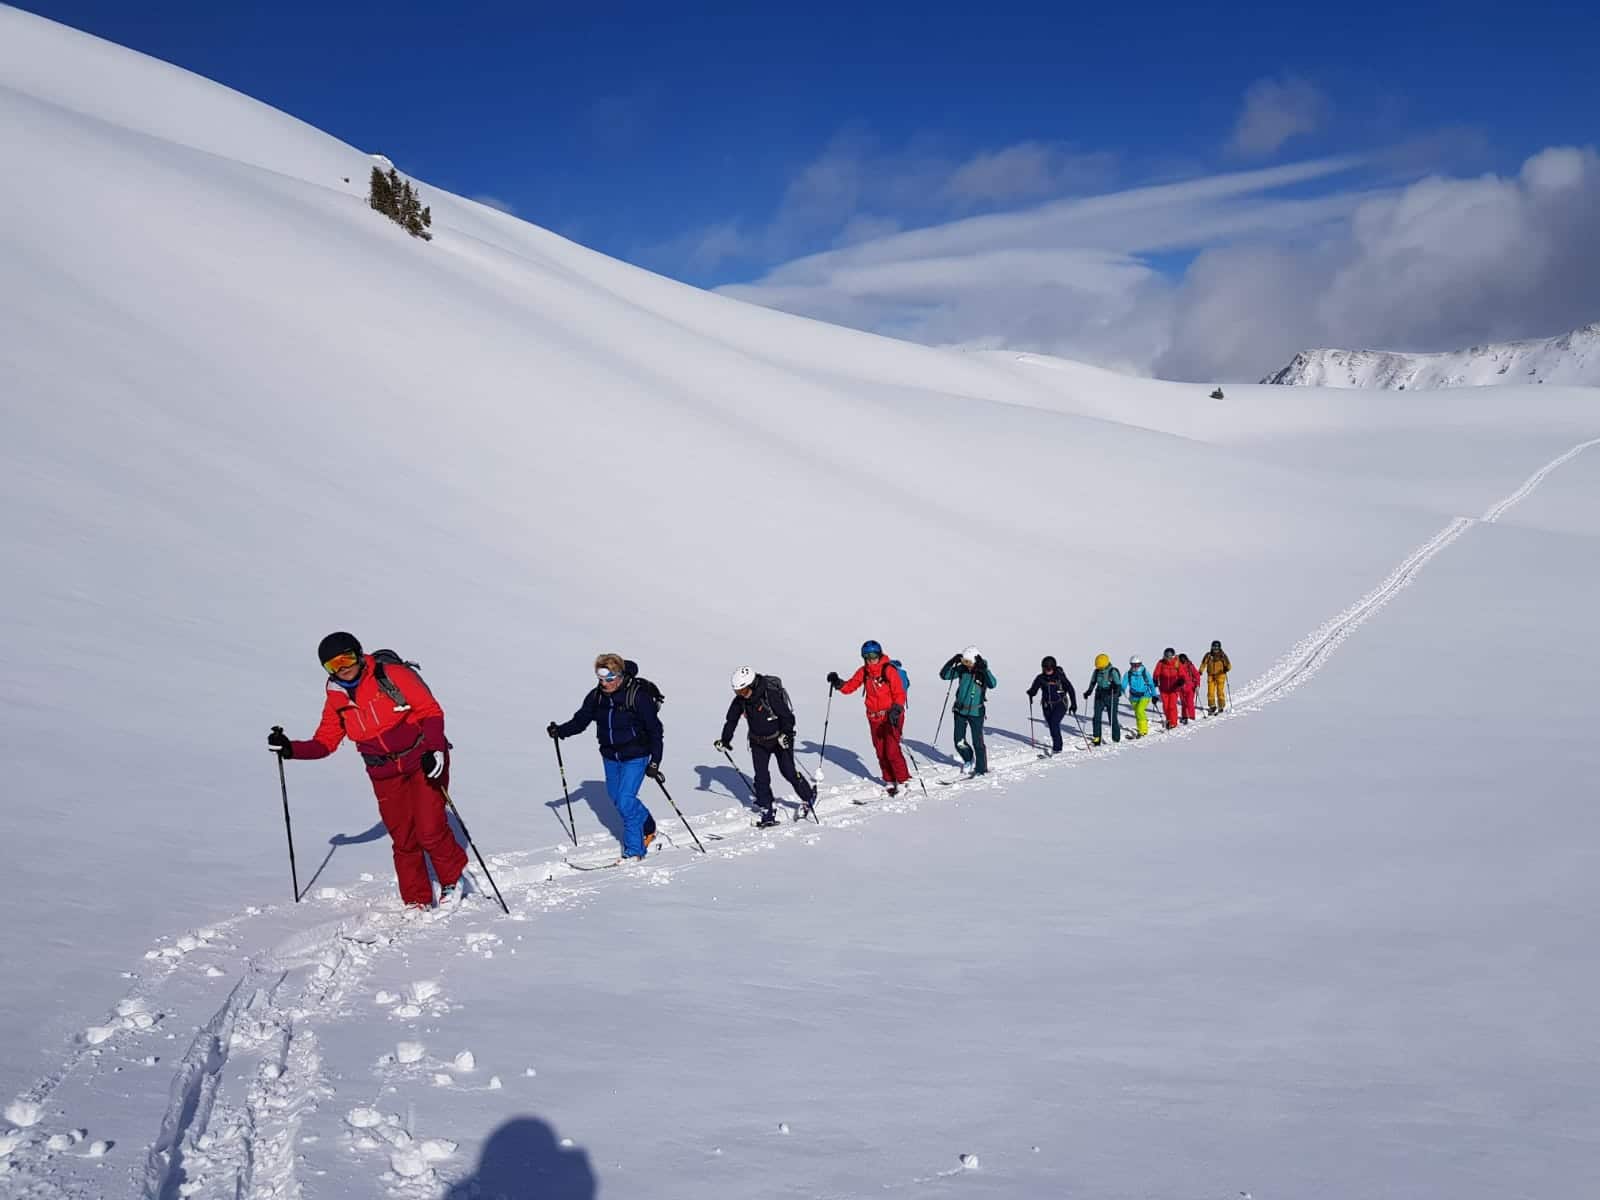 Wintersport nur für Frauen: Das Women's Winter Camp